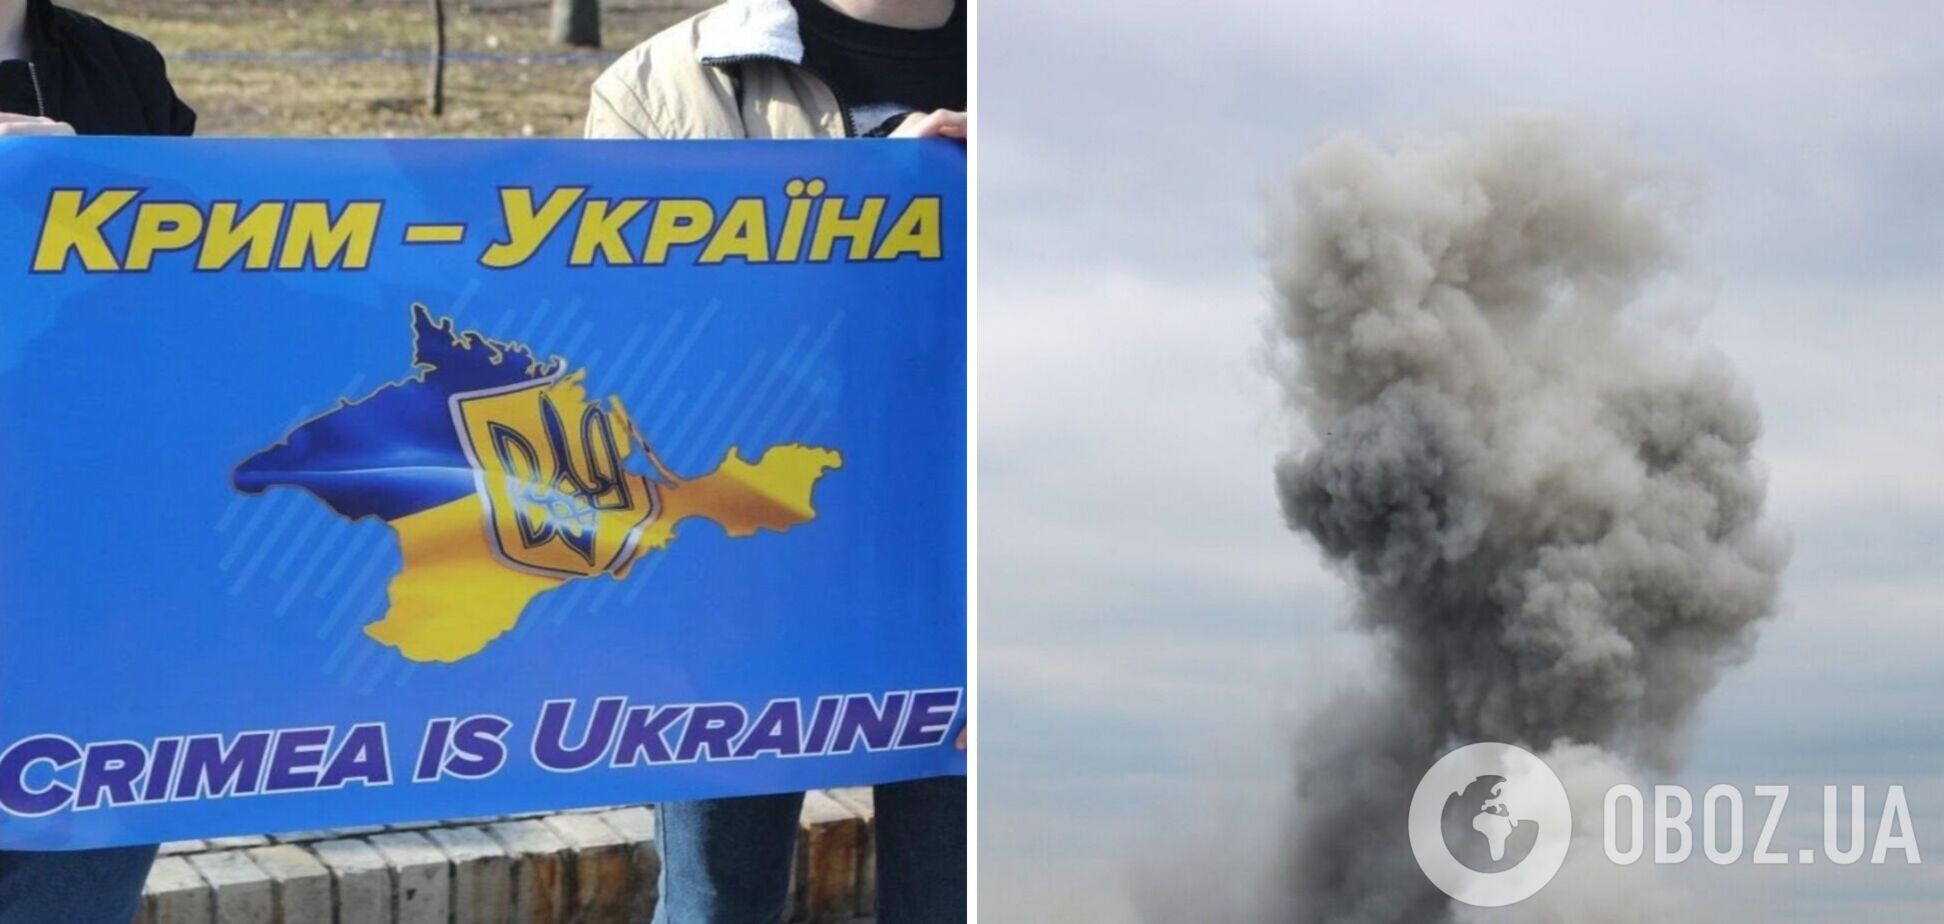 'Показательный инцидент': эксперт объяснил, что означает новая атака СБУ и ВМС на оккупантов в Крыму